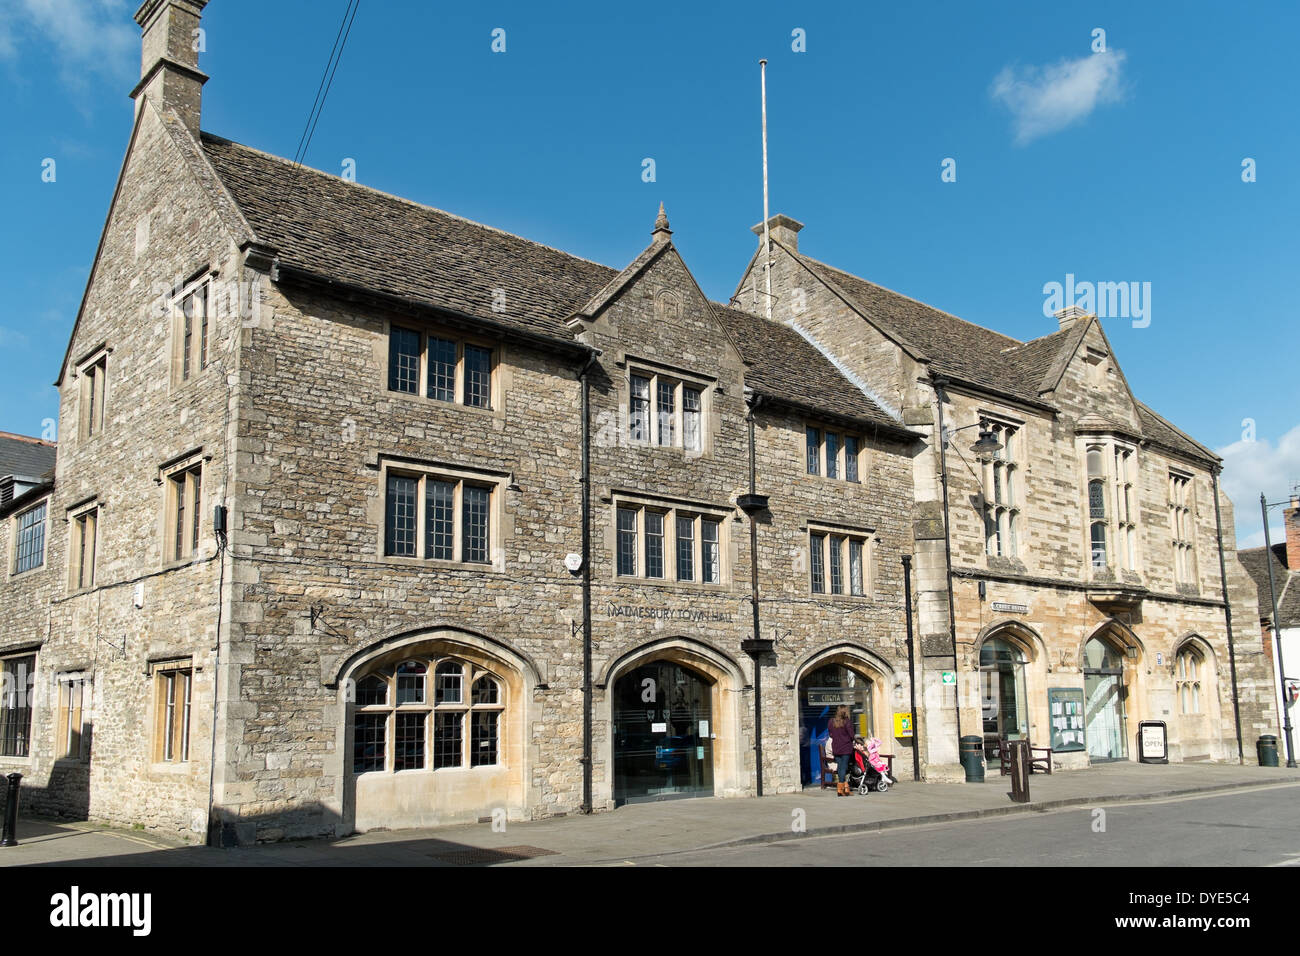 Le musée, précédemment l'hôtel de ville & fire station dans la ville de marché historique de Cotswold en Malmesbury Wiltshire UK Banque D'Images